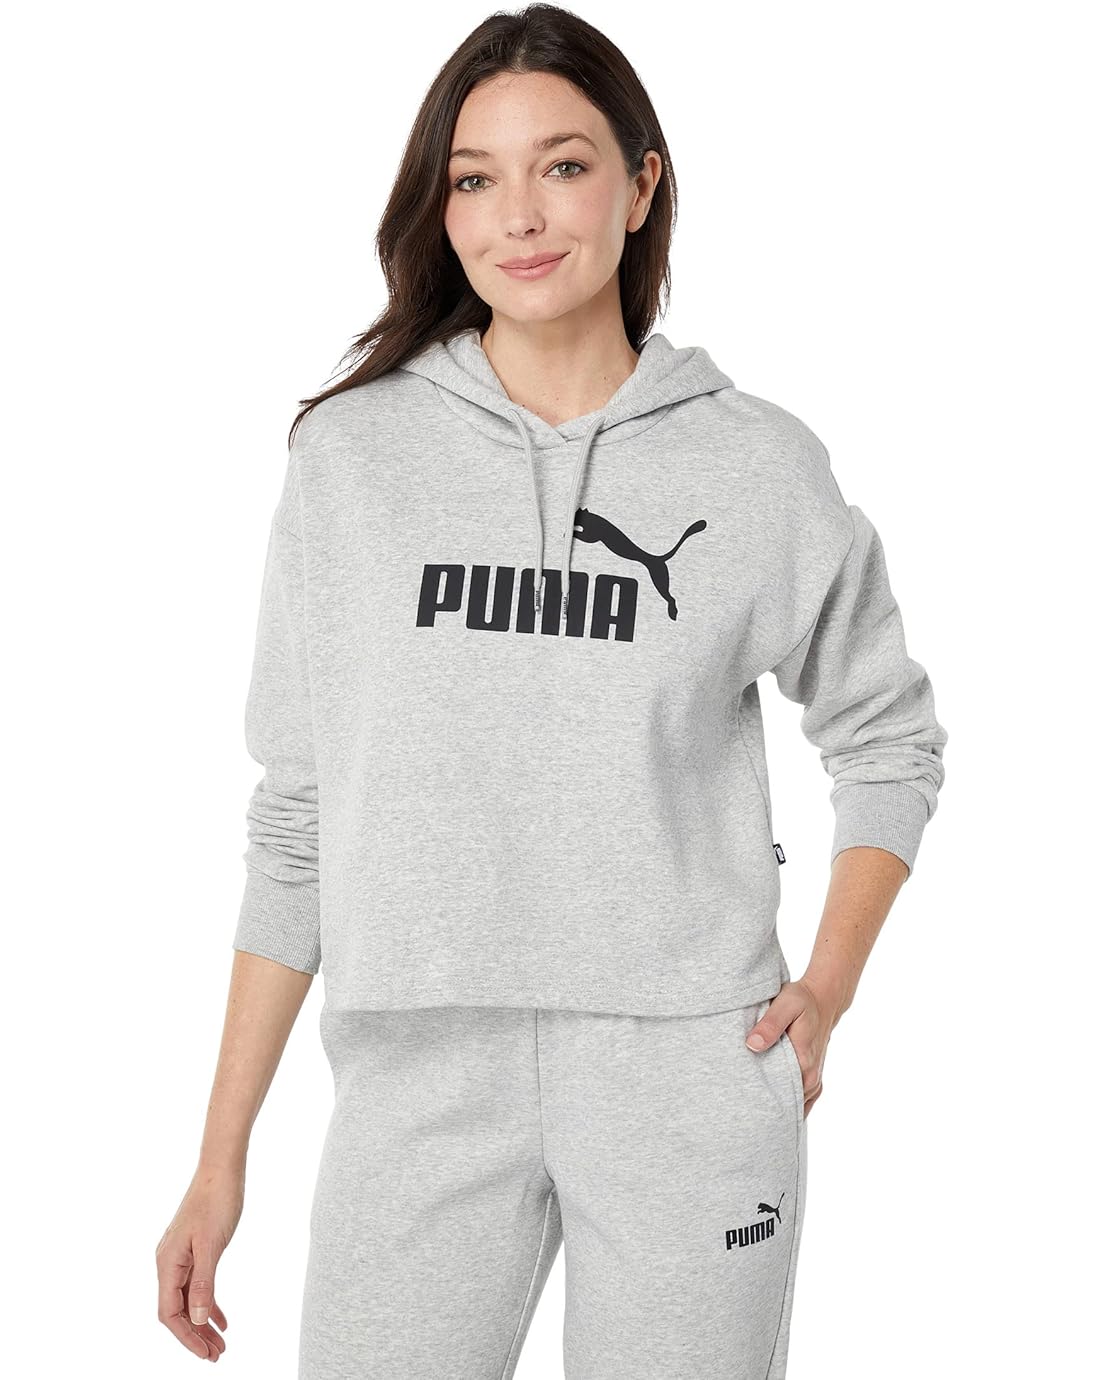 PUMA Essentials Cropped Logo Fleece Hoodie